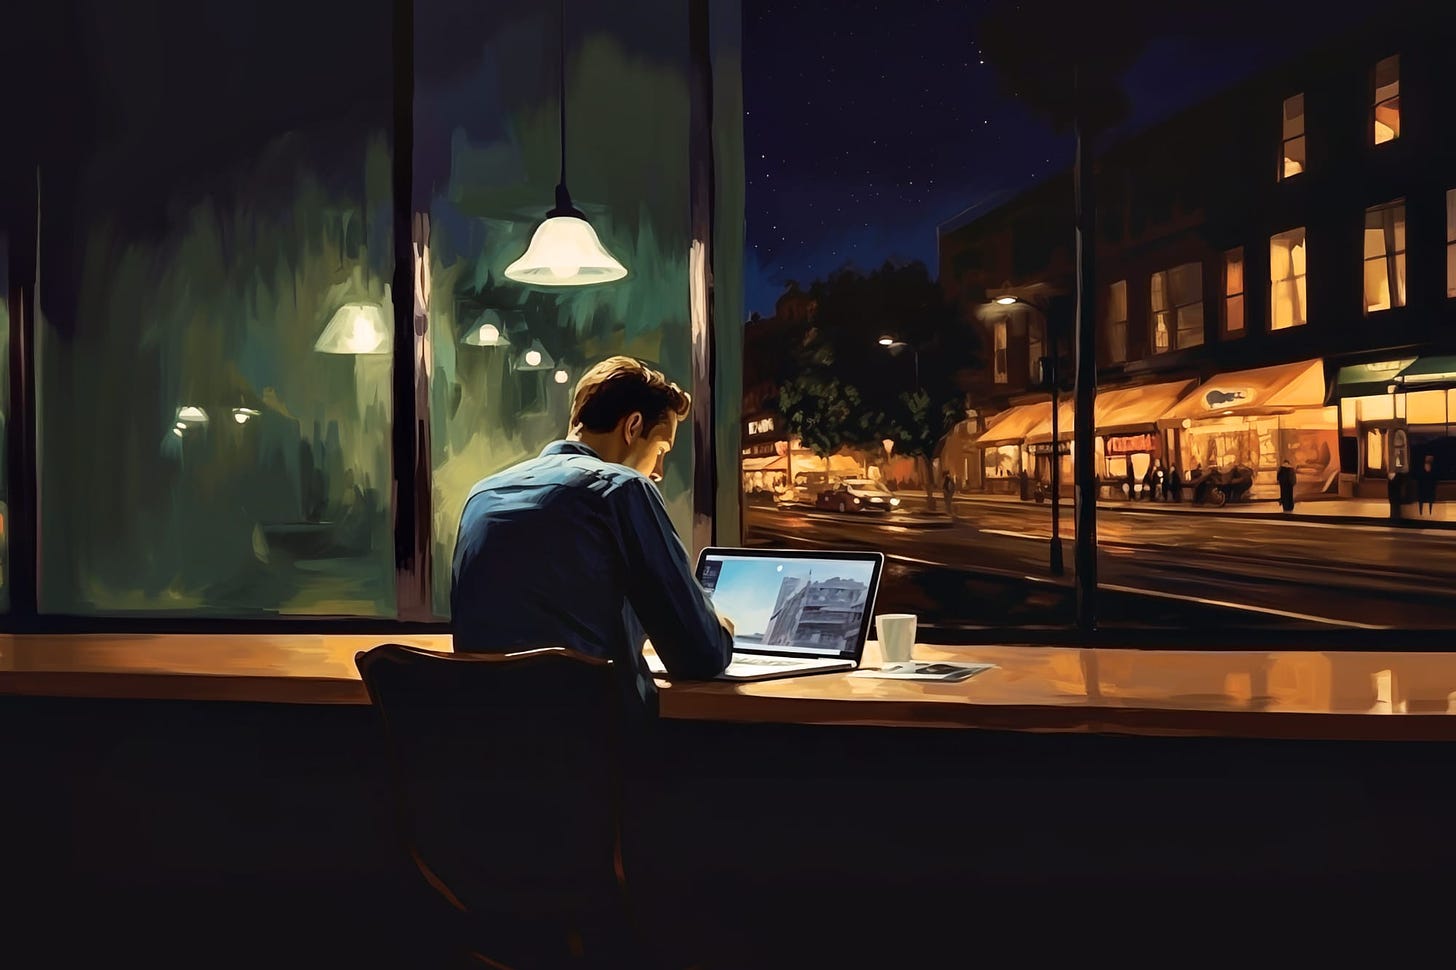 Grafika w stylu mojego ukochanego Edwarda Hoppera, przedstawiająca człowieka w kawiarni, nocą, z MacBookiem. Prawdopodobnie planuje Nowy Rok.